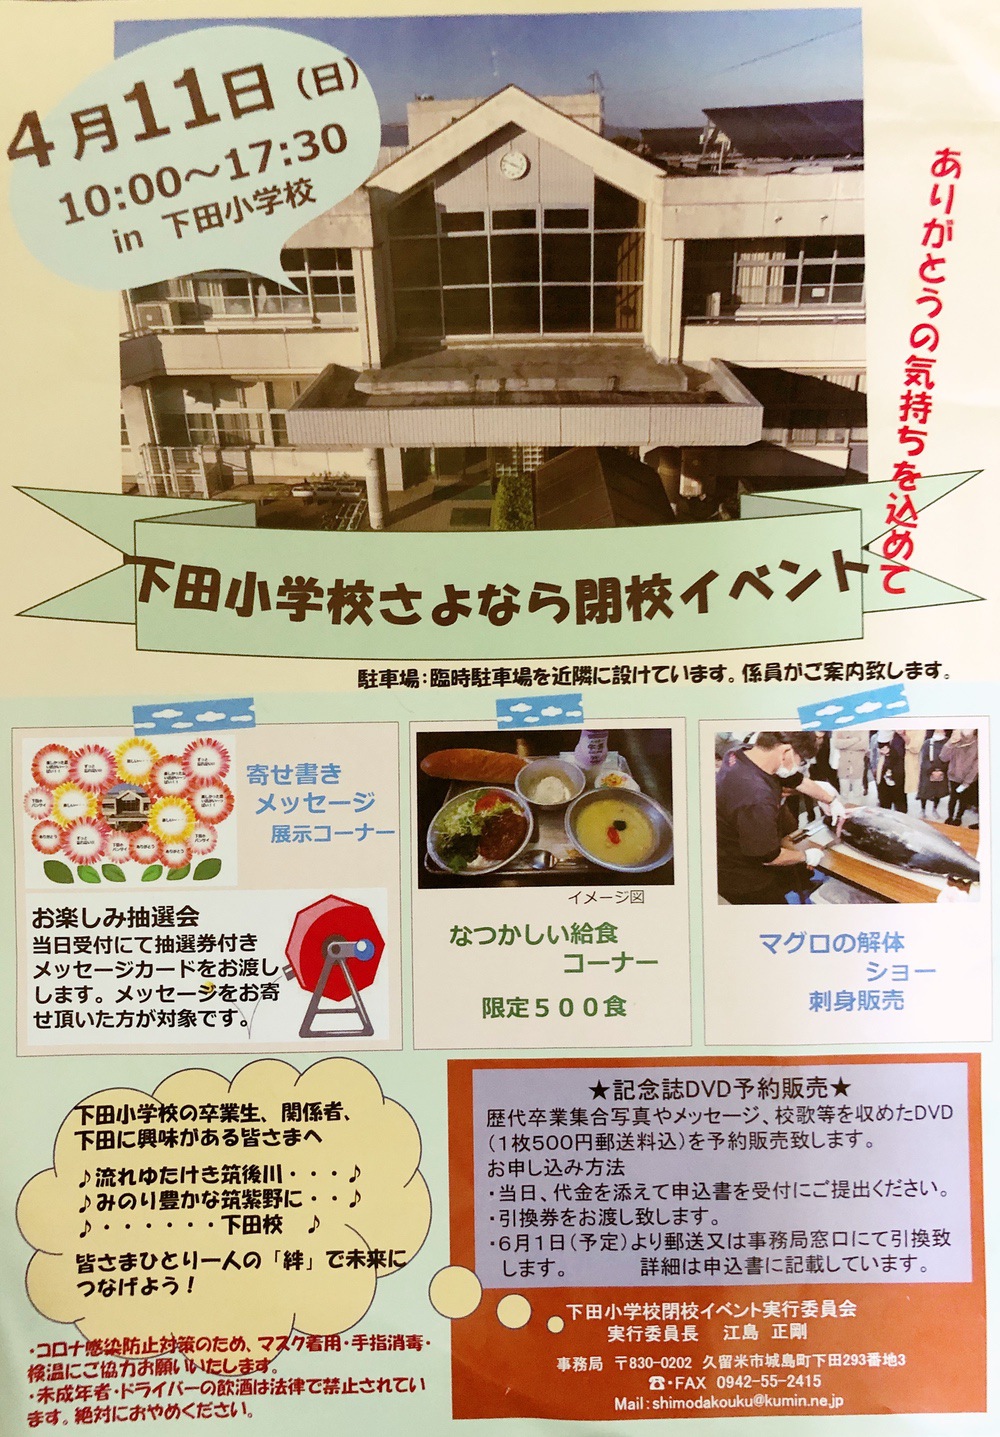 久留米市 下田小学校 140年の歴史に幕「さよなら閉校イベント」